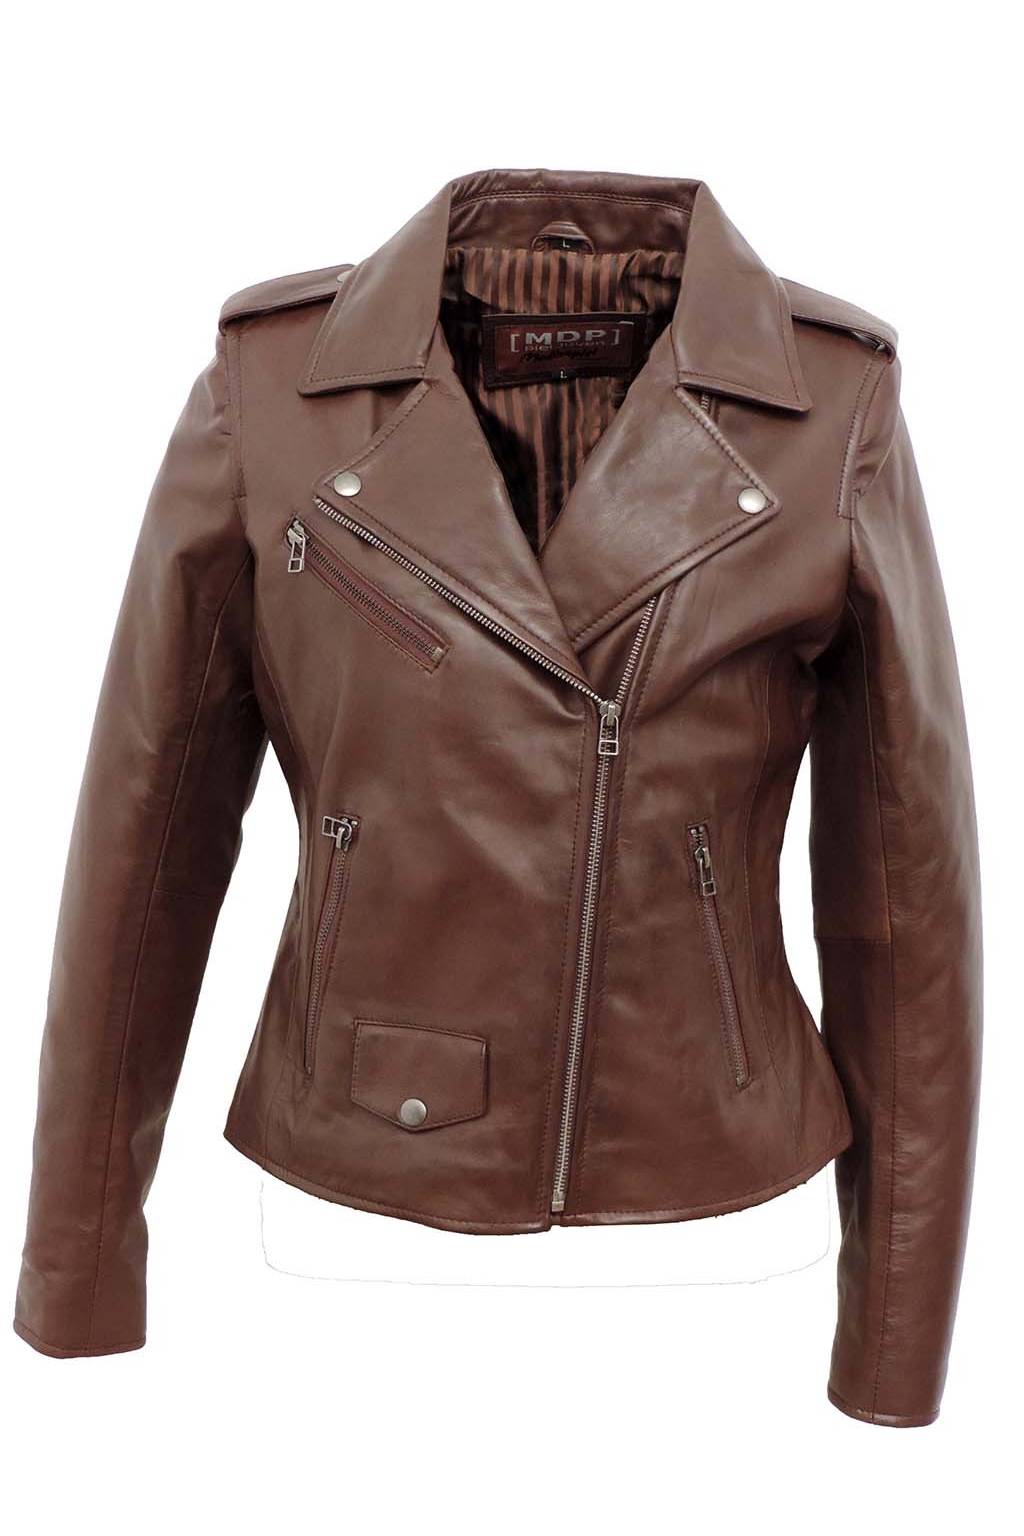 MDP 109 Brown jacket